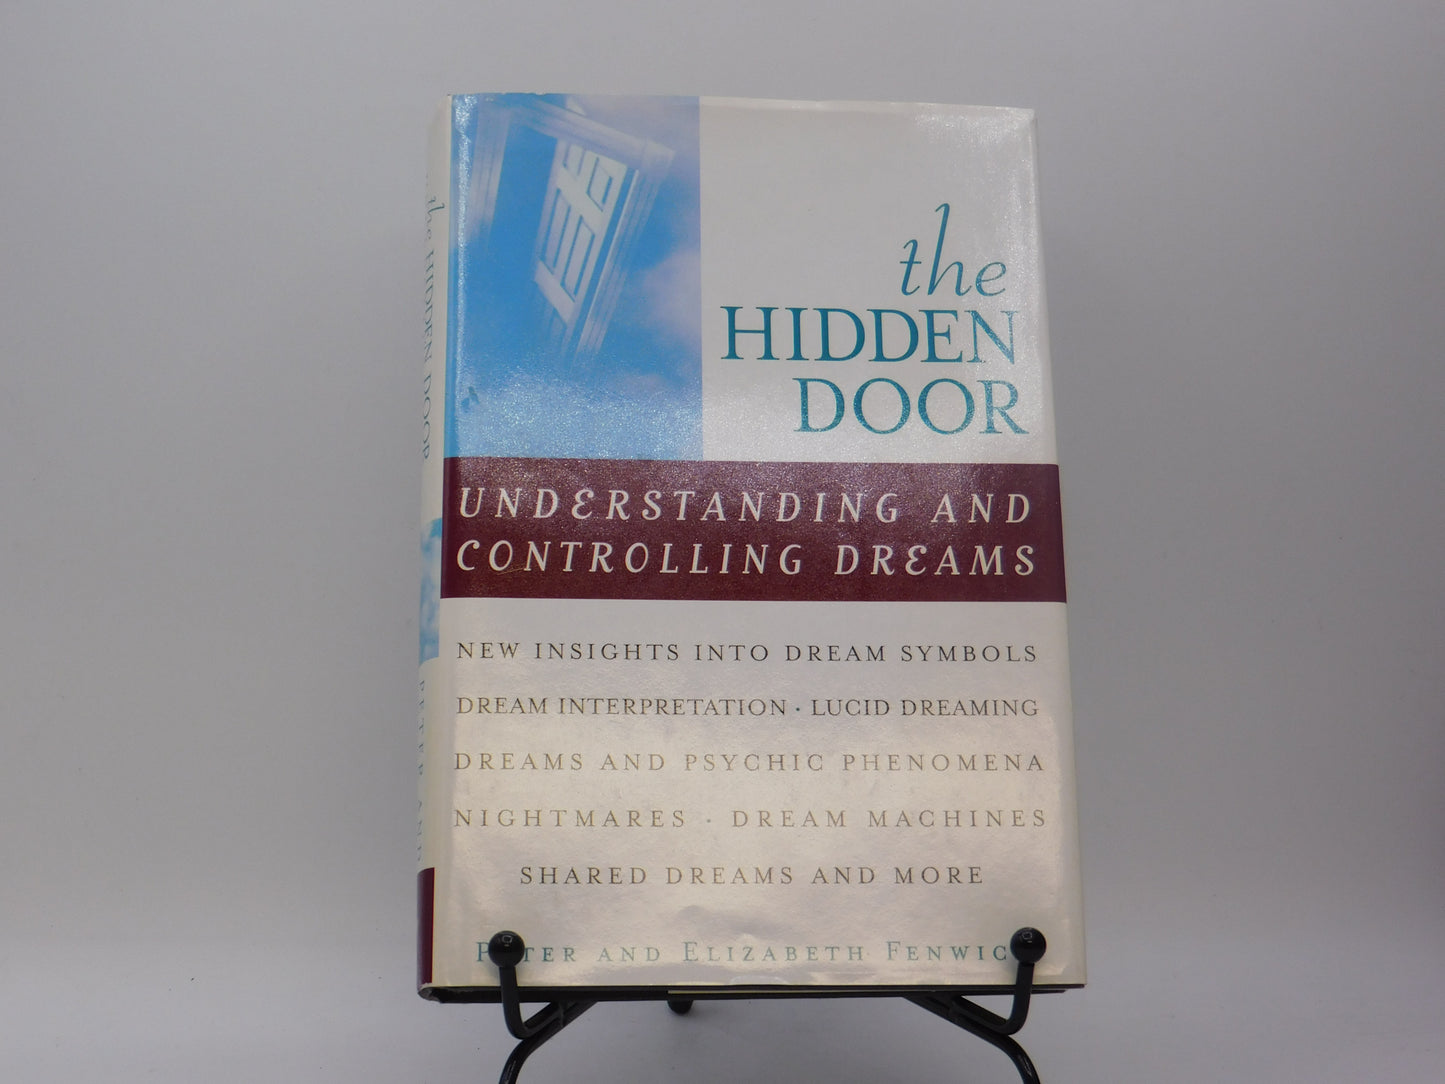 The Hidden Door: Understanding And Controlling Dreams By Peter And Elizabeth Fenwick